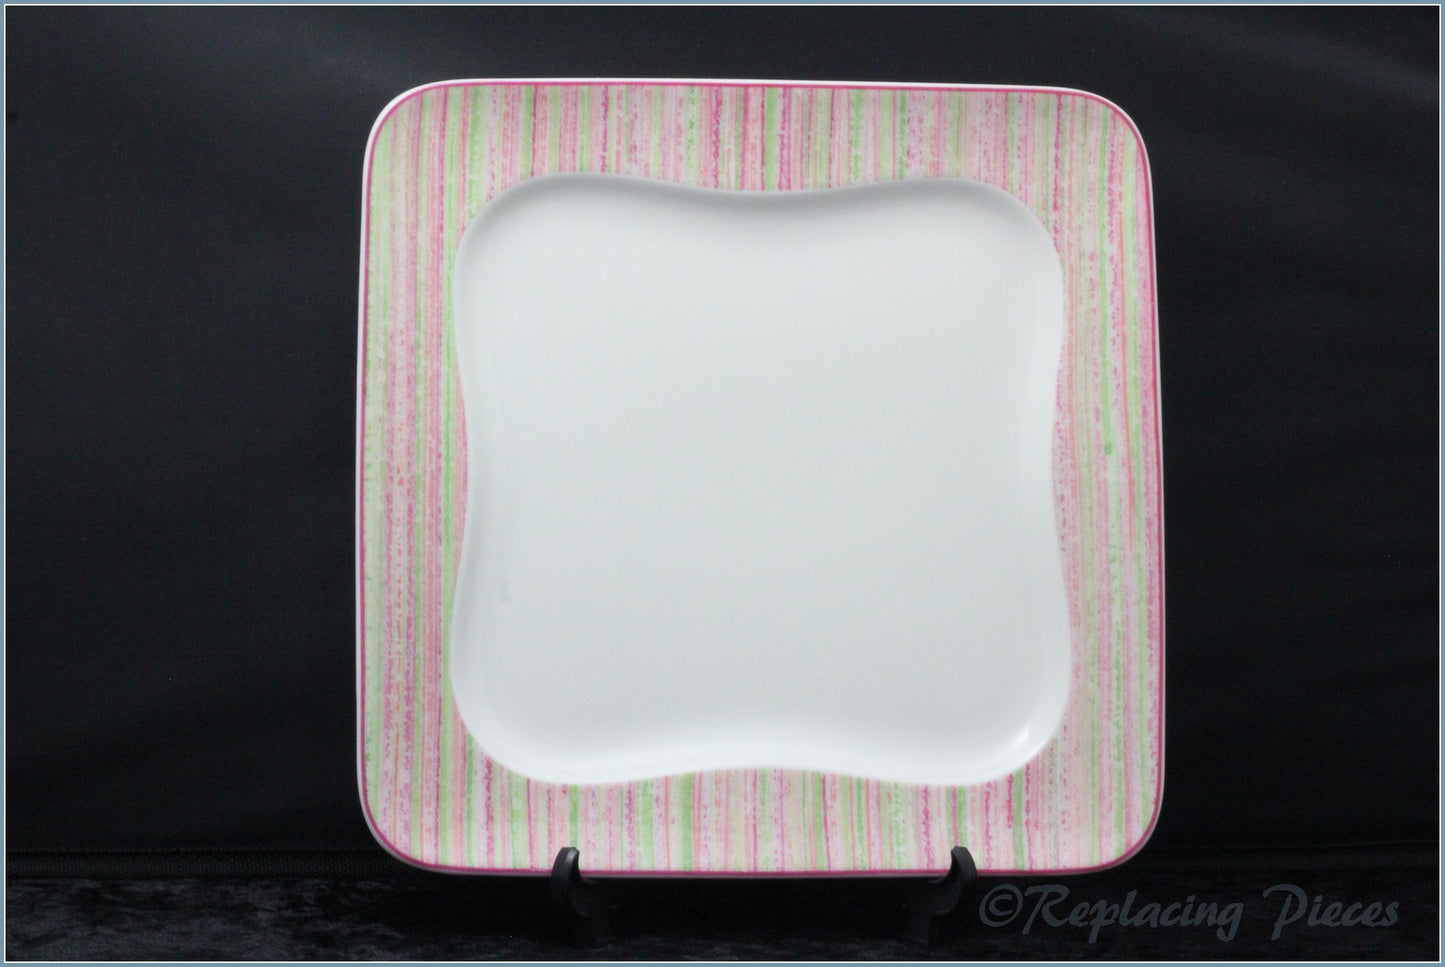 Villeroy & Boch - Vivo - 10 7/8" Square Dinner Plate (Stripe)